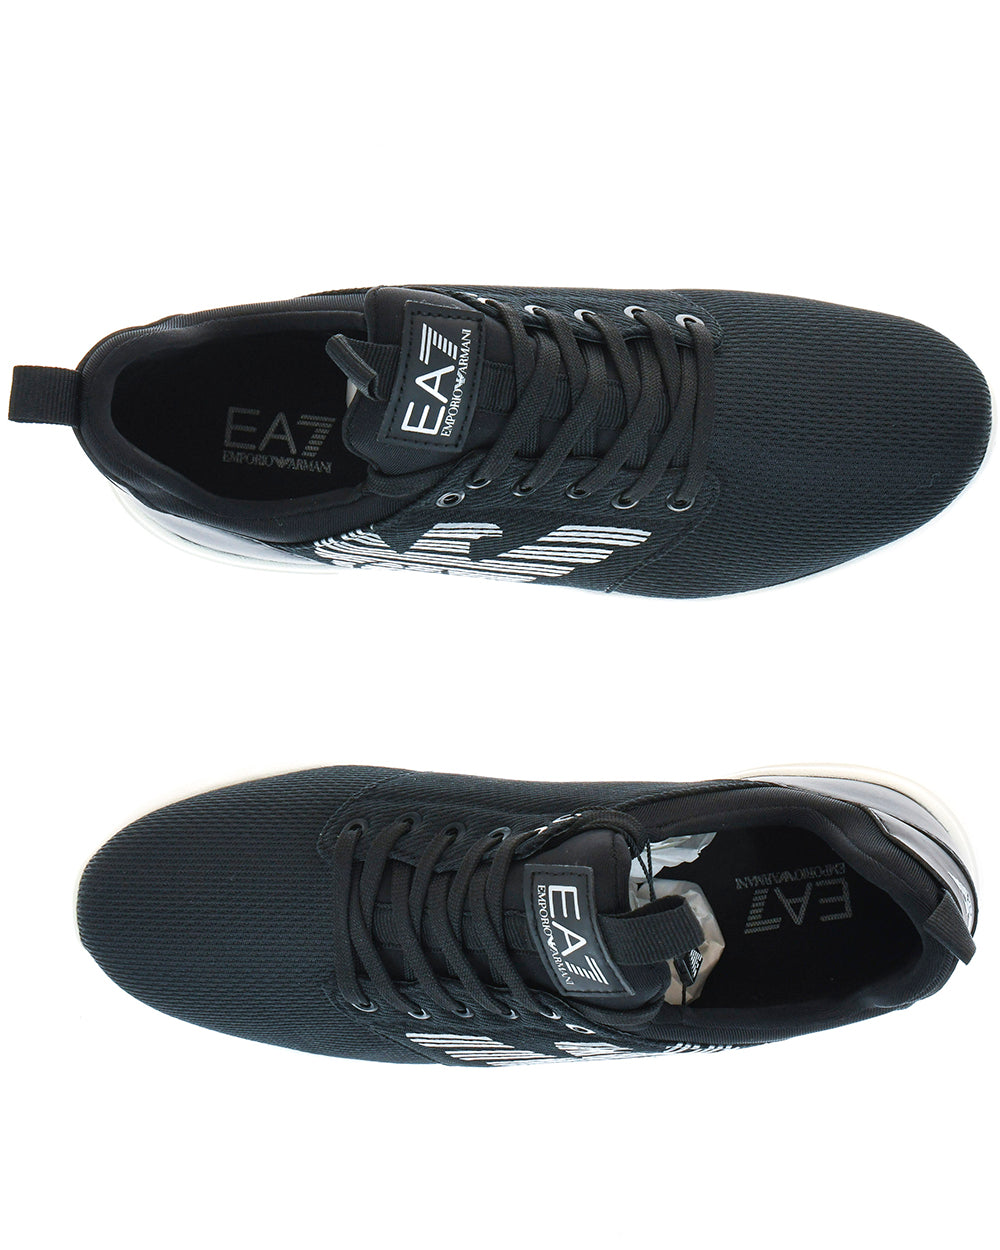 Sneakers EA7 8 Nero Scuro Emporio Armani - mem39